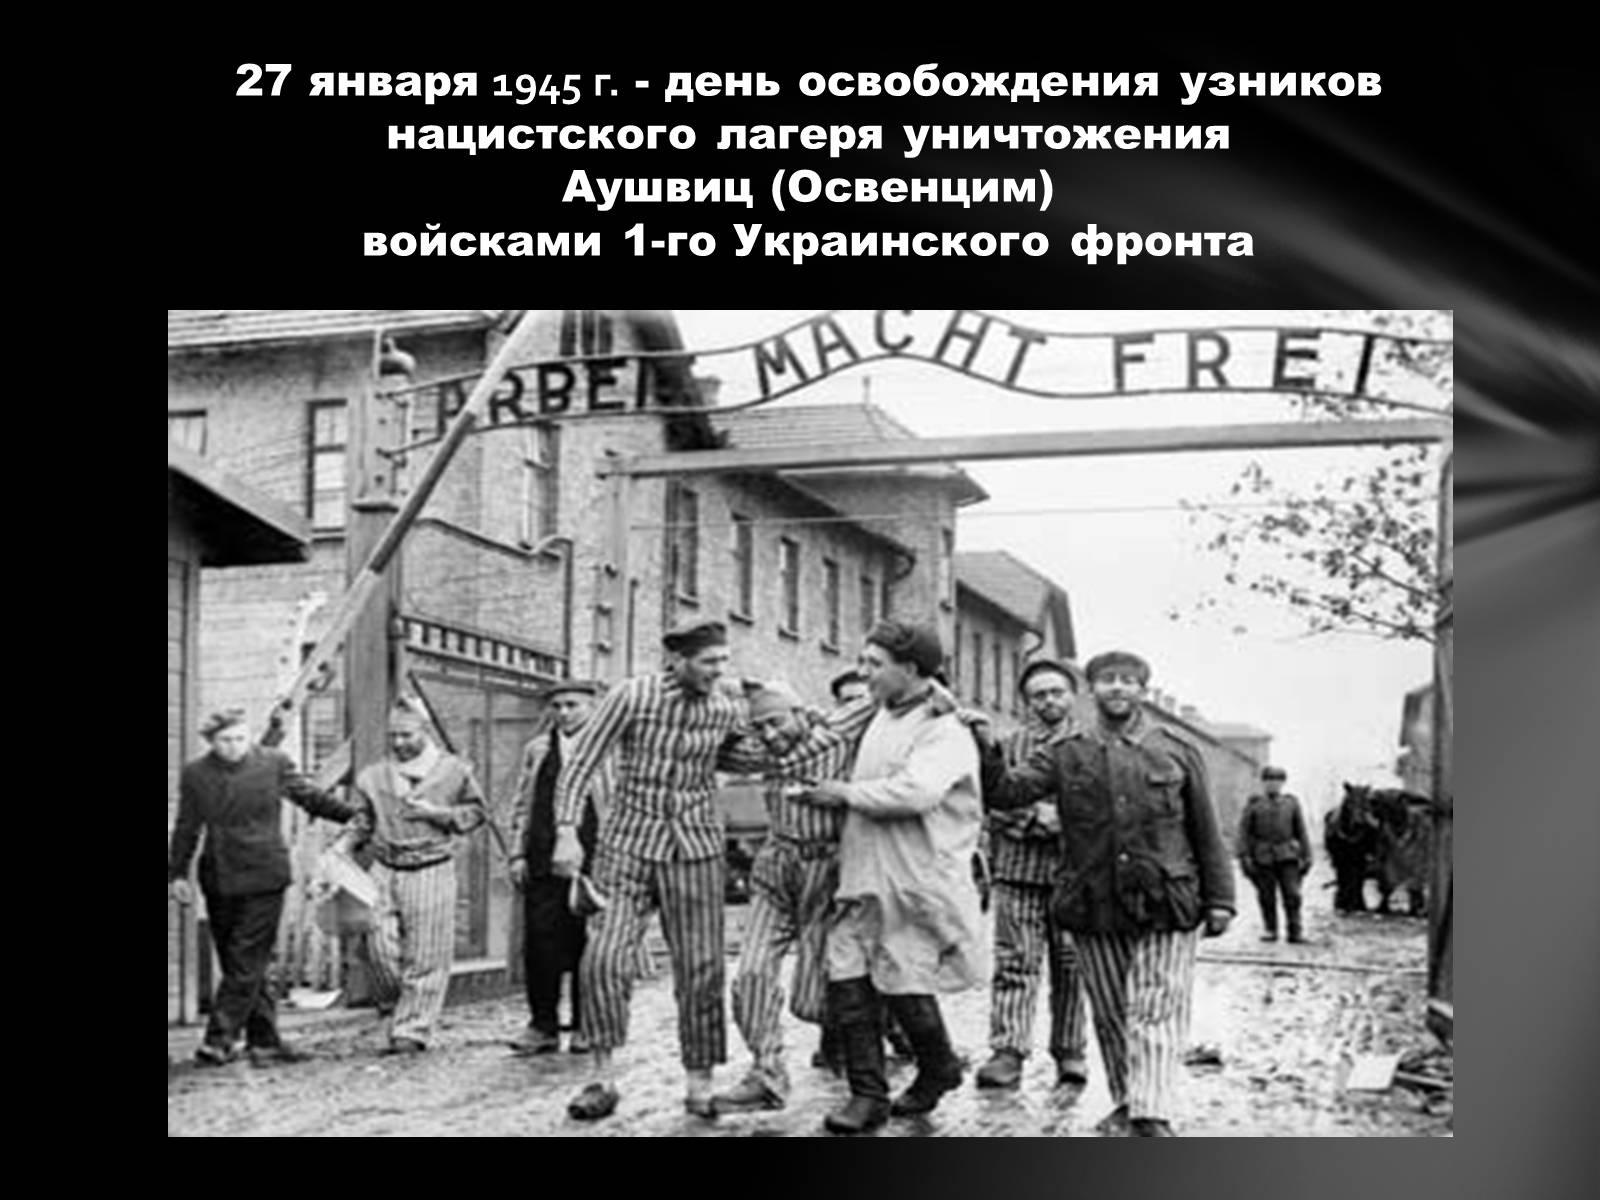 27 Января 1945 освобождение узников концлагеря Освенцим